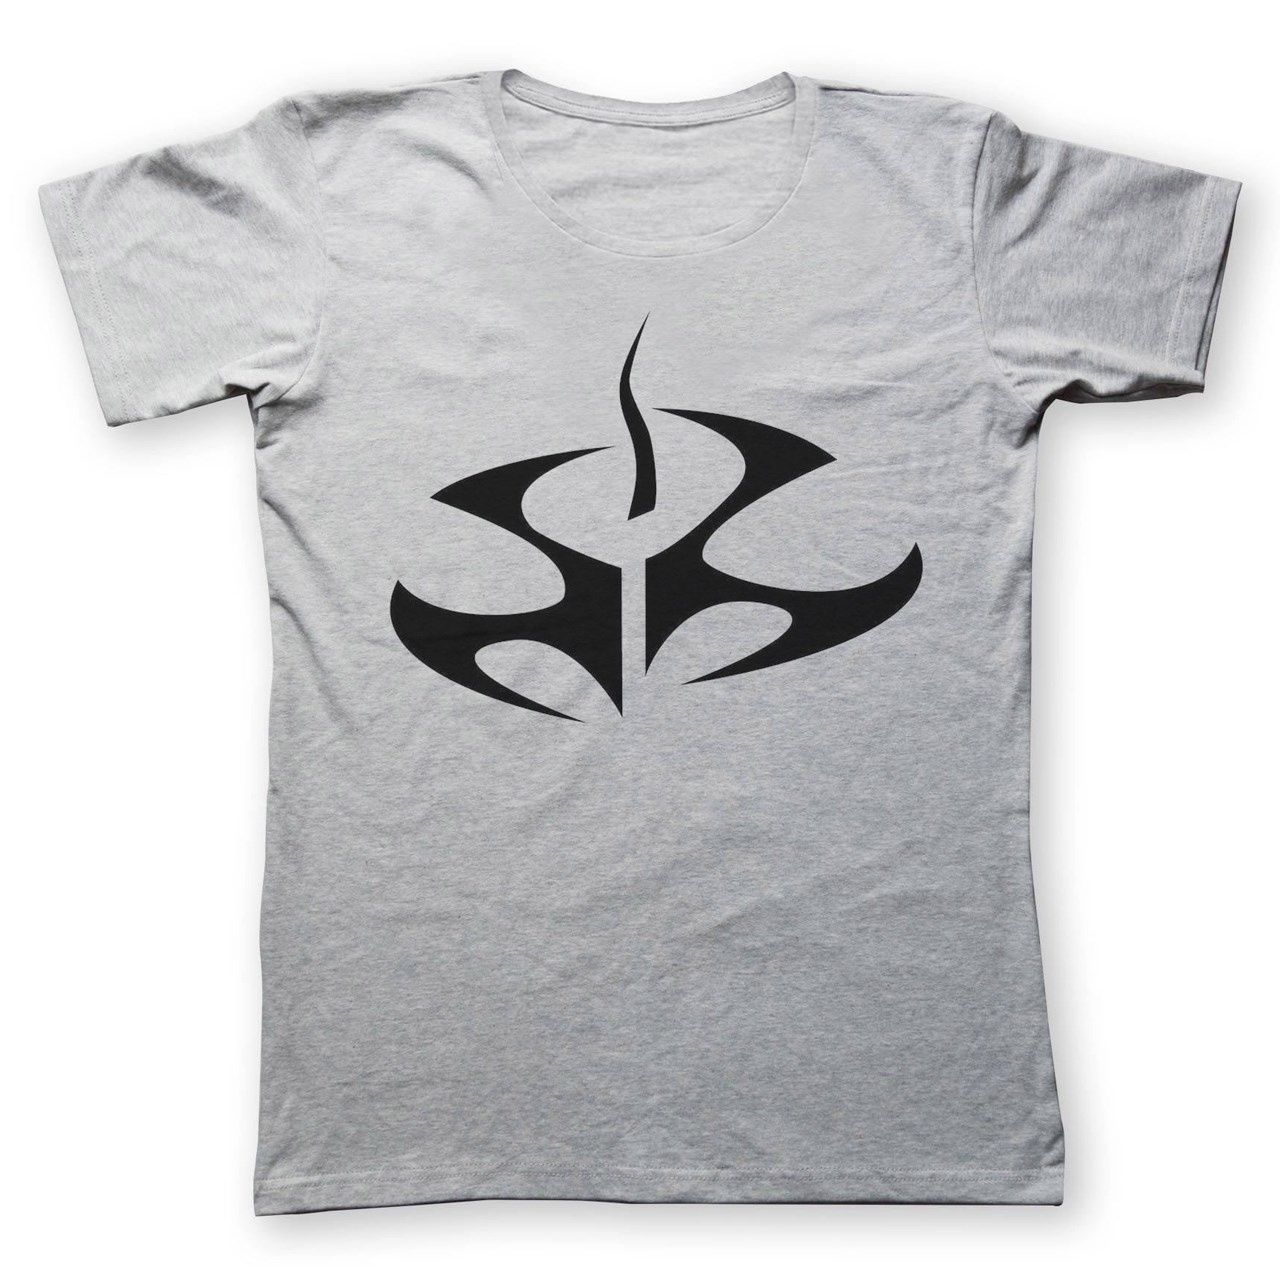 تی شرت مردانه  به رسم طرح هیتمن کد 224 -  - 1